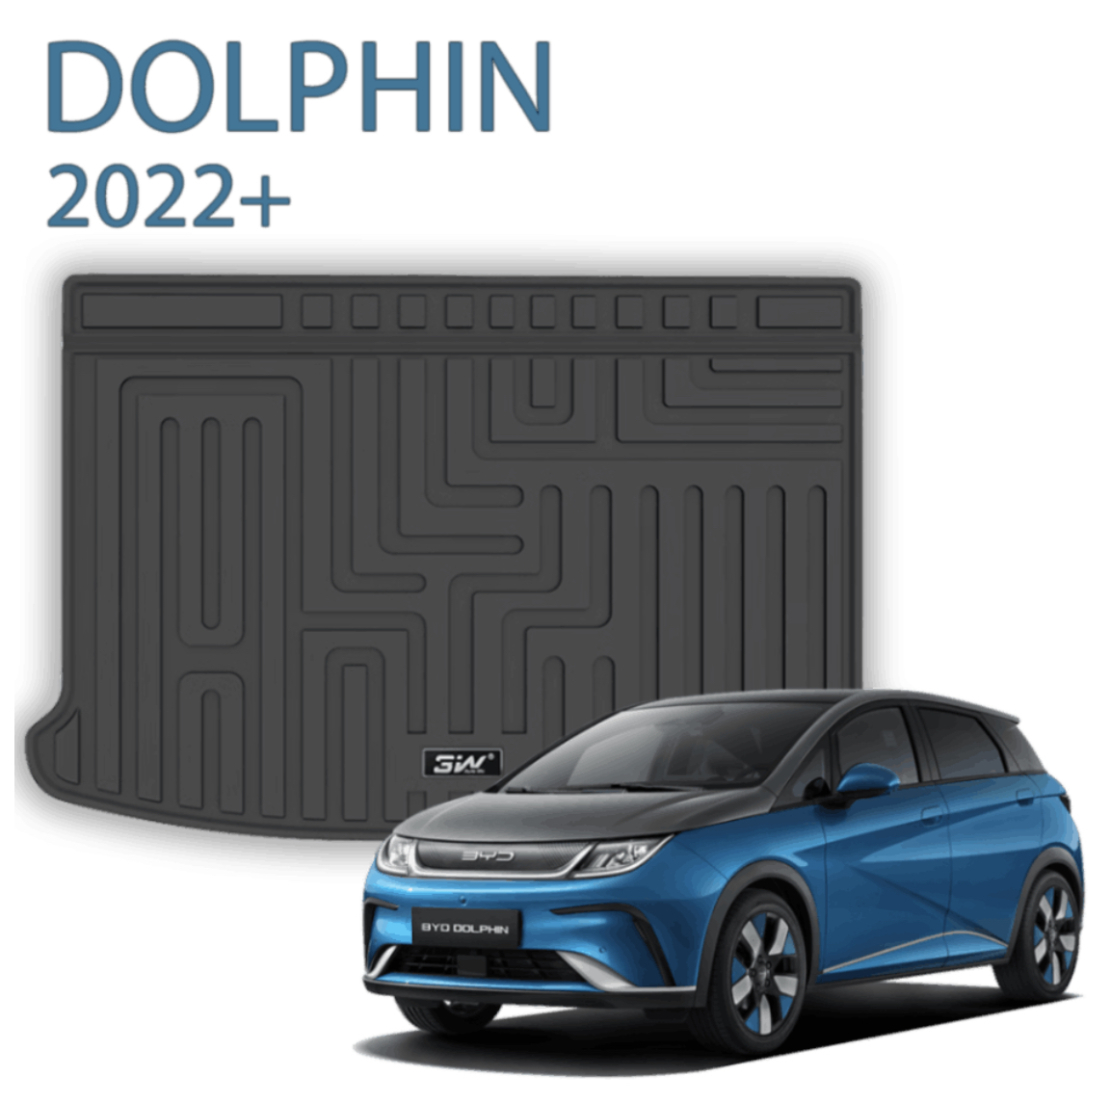 שטיח תא מטען מבית 3w תואם מקור ל BYD dolphin משנת 2022+